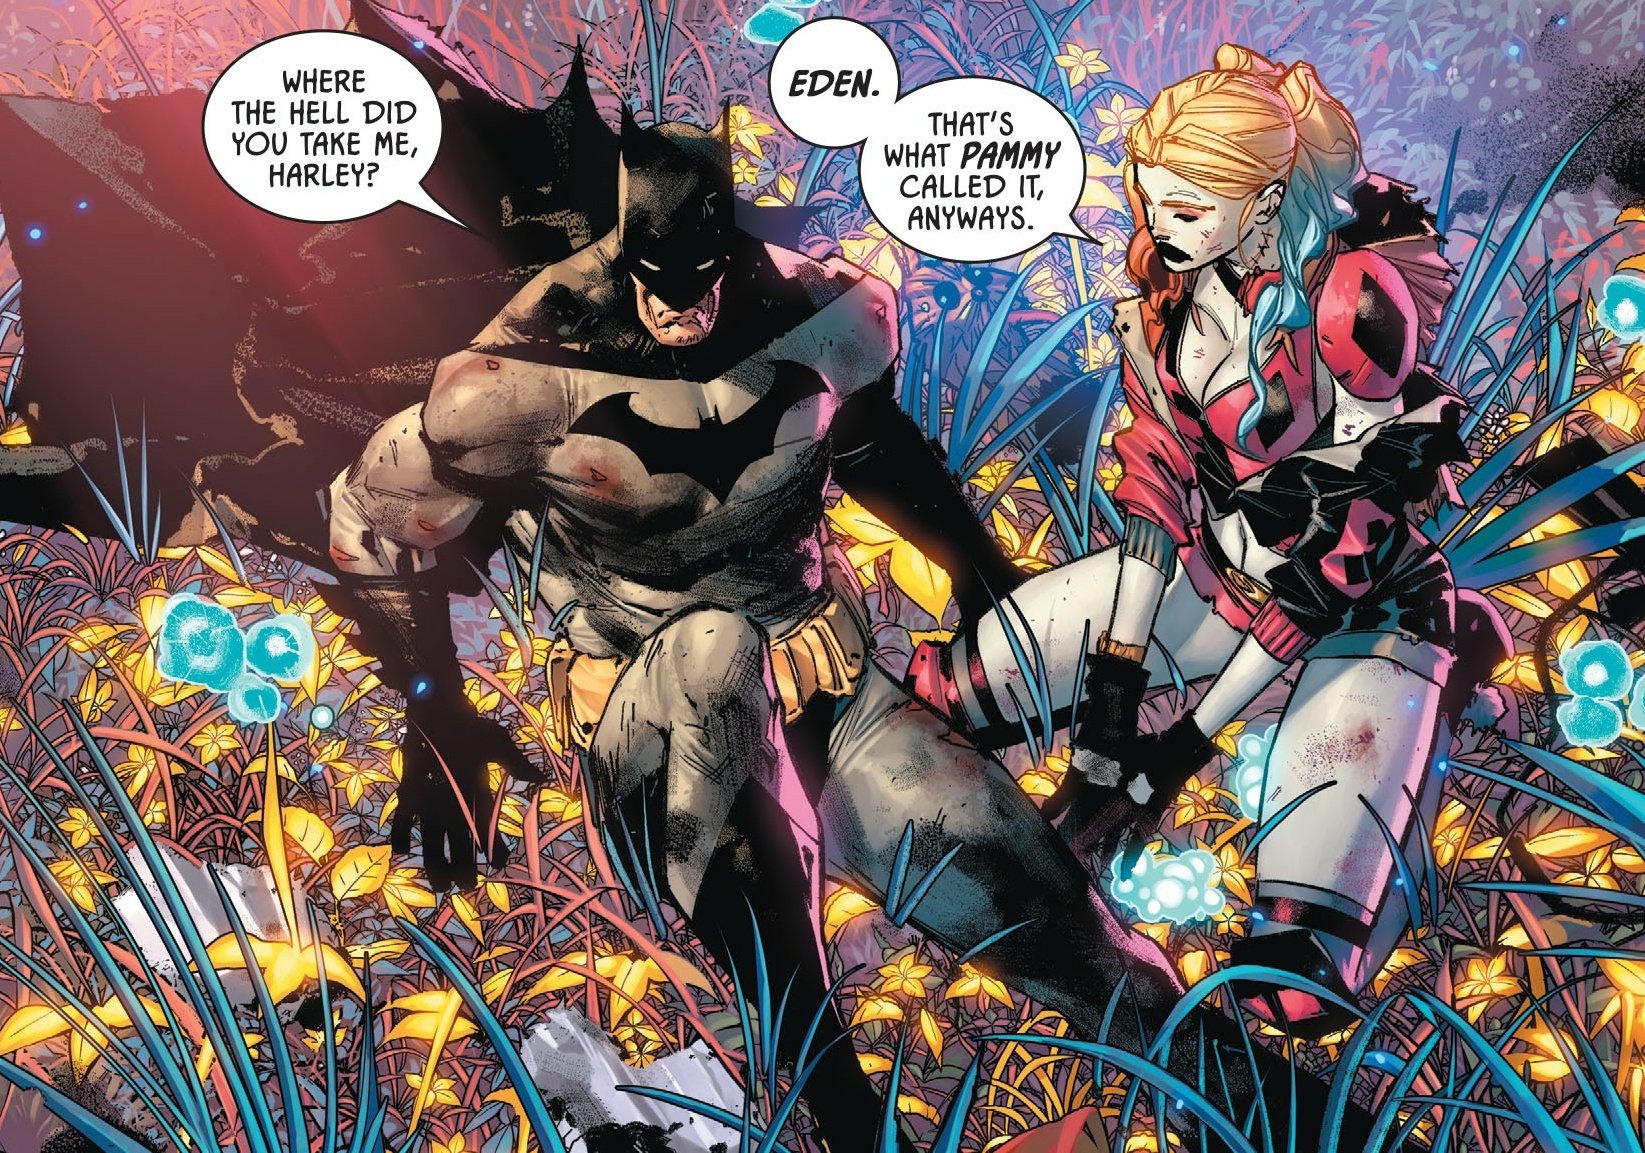 “Harley Quinn in her secret garden made by Poison Ivy in Batman #97” .